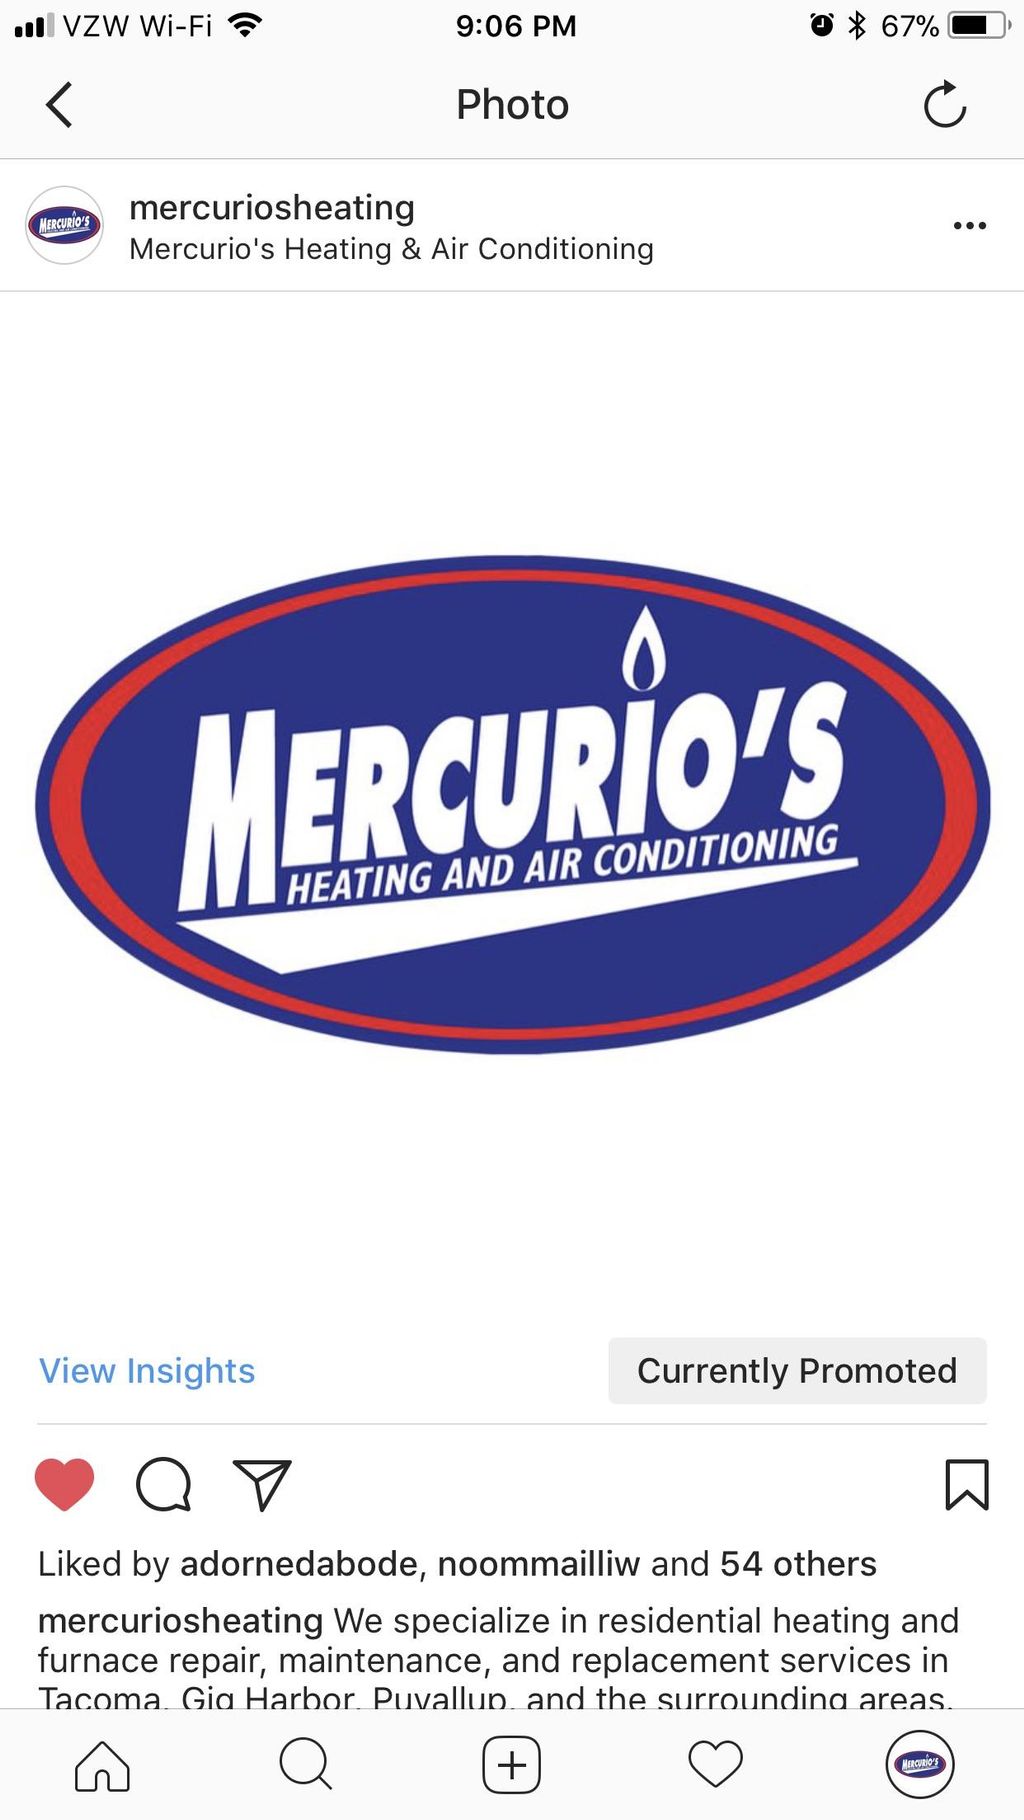 Mercurio’s Heating & Air Conditioning